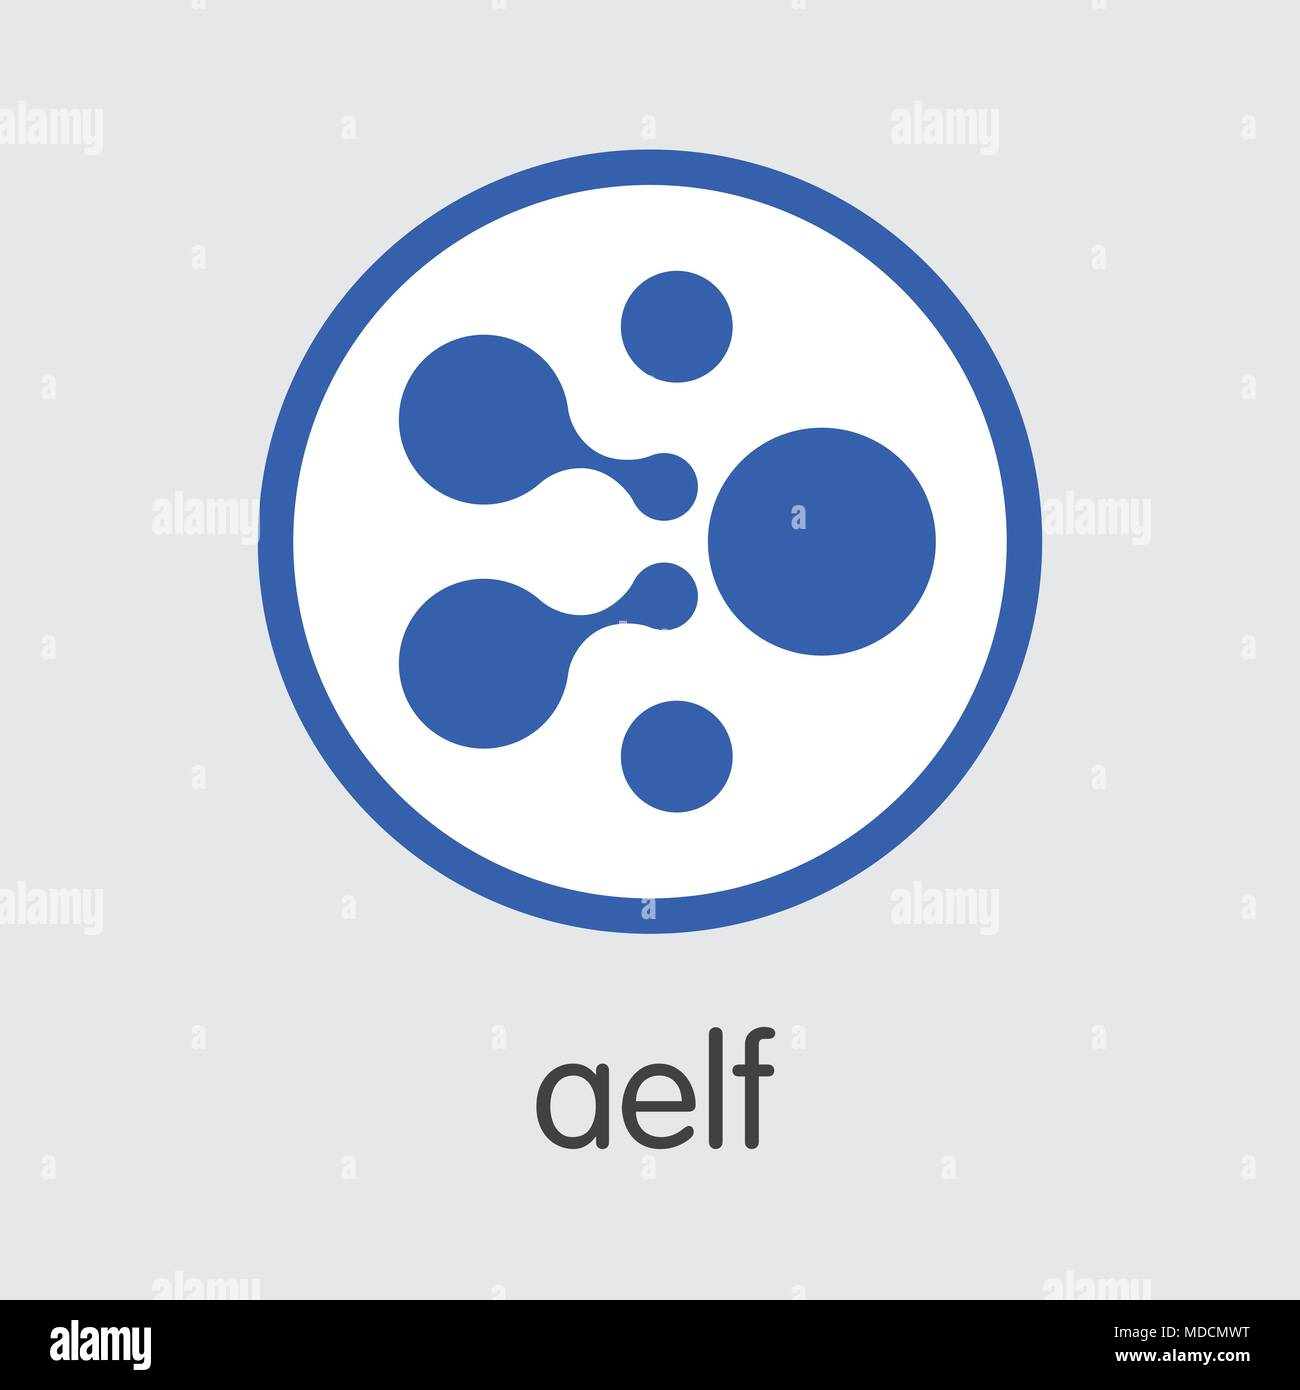 Aelf moneta virtuale. ELF vettore dell'immagine della moneta. Illustrazione Vettoriale